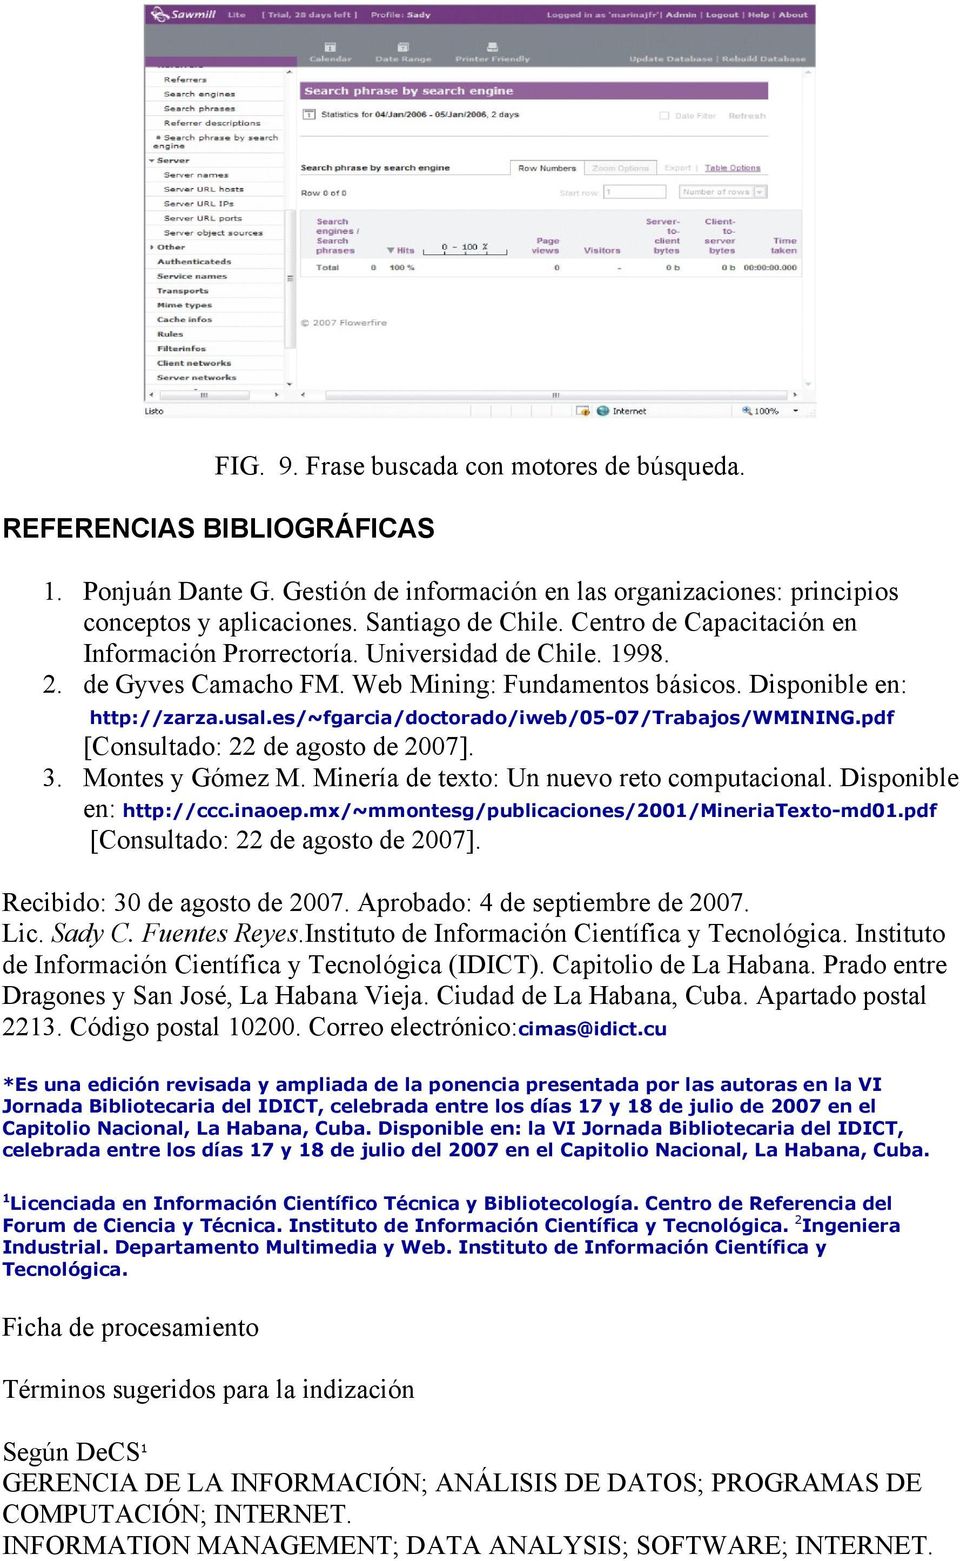 es/~fgarcia/doctorado/iweb/05-07/trabajos/wmining.pdf [Consultado: 22 de agosto de 2007]. 3. Montes y Gómez M. Minería de texto: Un nuevo reto computacional. Disponible en: http://ccc.inaoep.